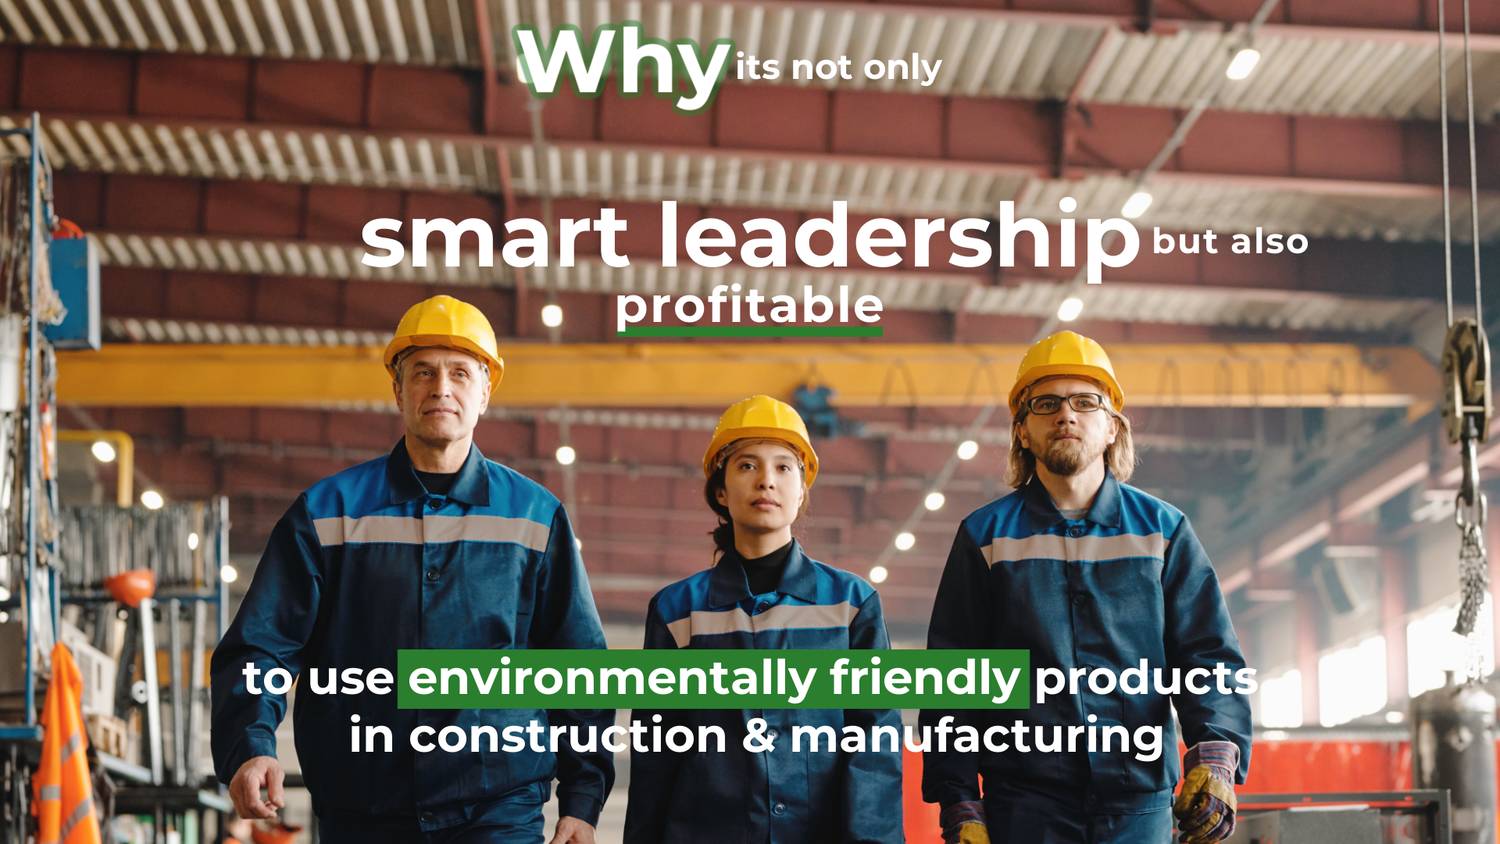 Warum es nicht nur kluger Führungsstil, sondern auch rentabel ist, umweltfreundliche Produkte in Baugewerbe, Bergbau oder in der Fertigung einzusetzen